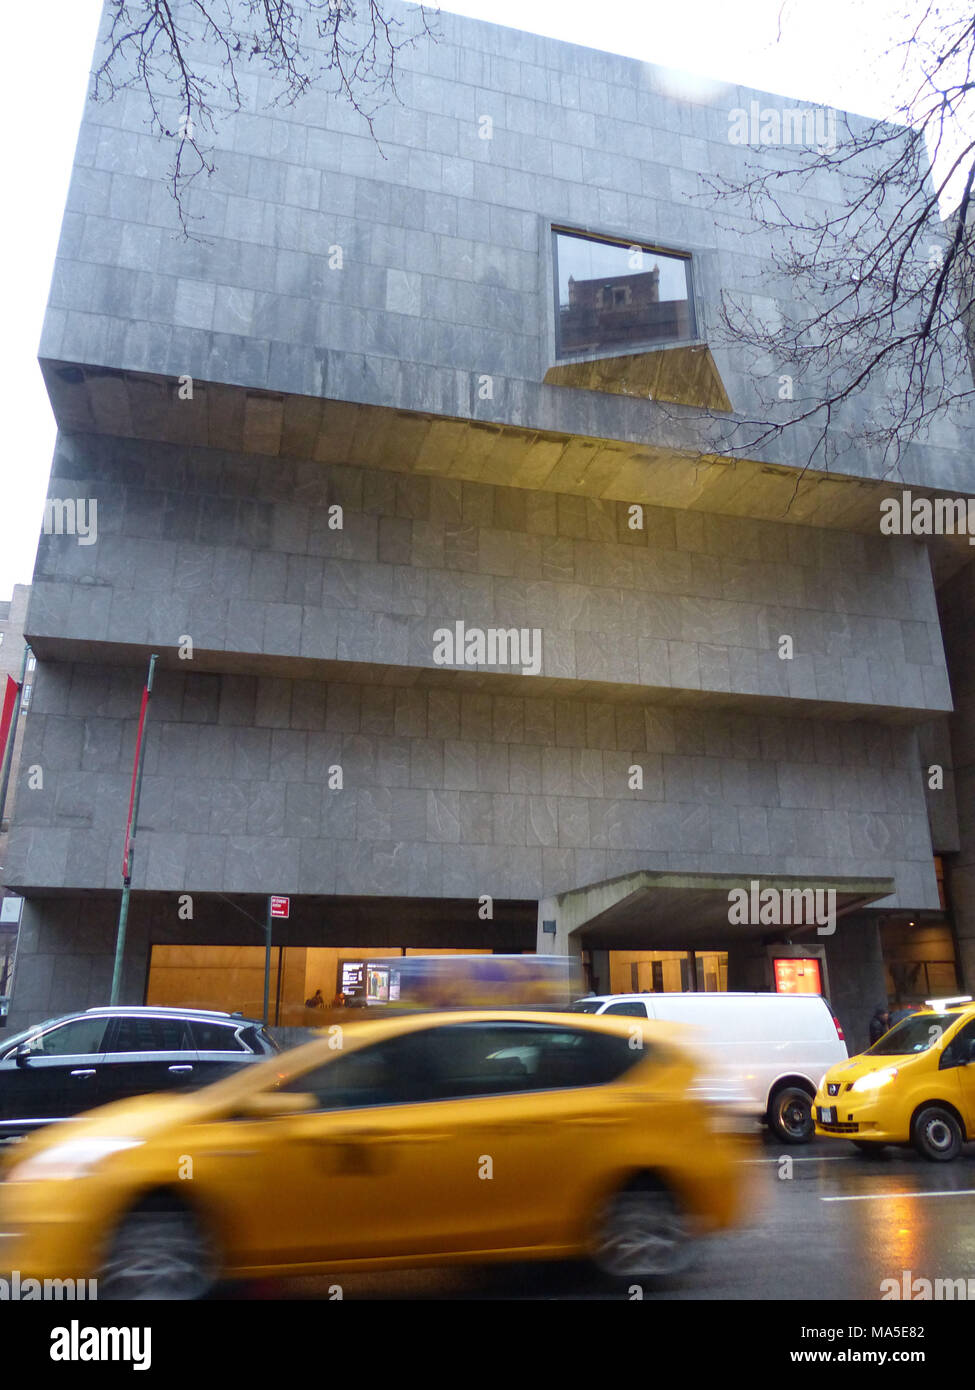 El Whitney Museum of American Art situado en Madison Avenue y 75th Street. Este museo fue diseñado por el arquitecto Marcel Breuer y desde 2016 es alquilado por el Museo Metropolitano de Arte. Que fue originalmente encargado por Gethrude Vanderbilt Whitney, un amante del arte y defensor Foto de stock